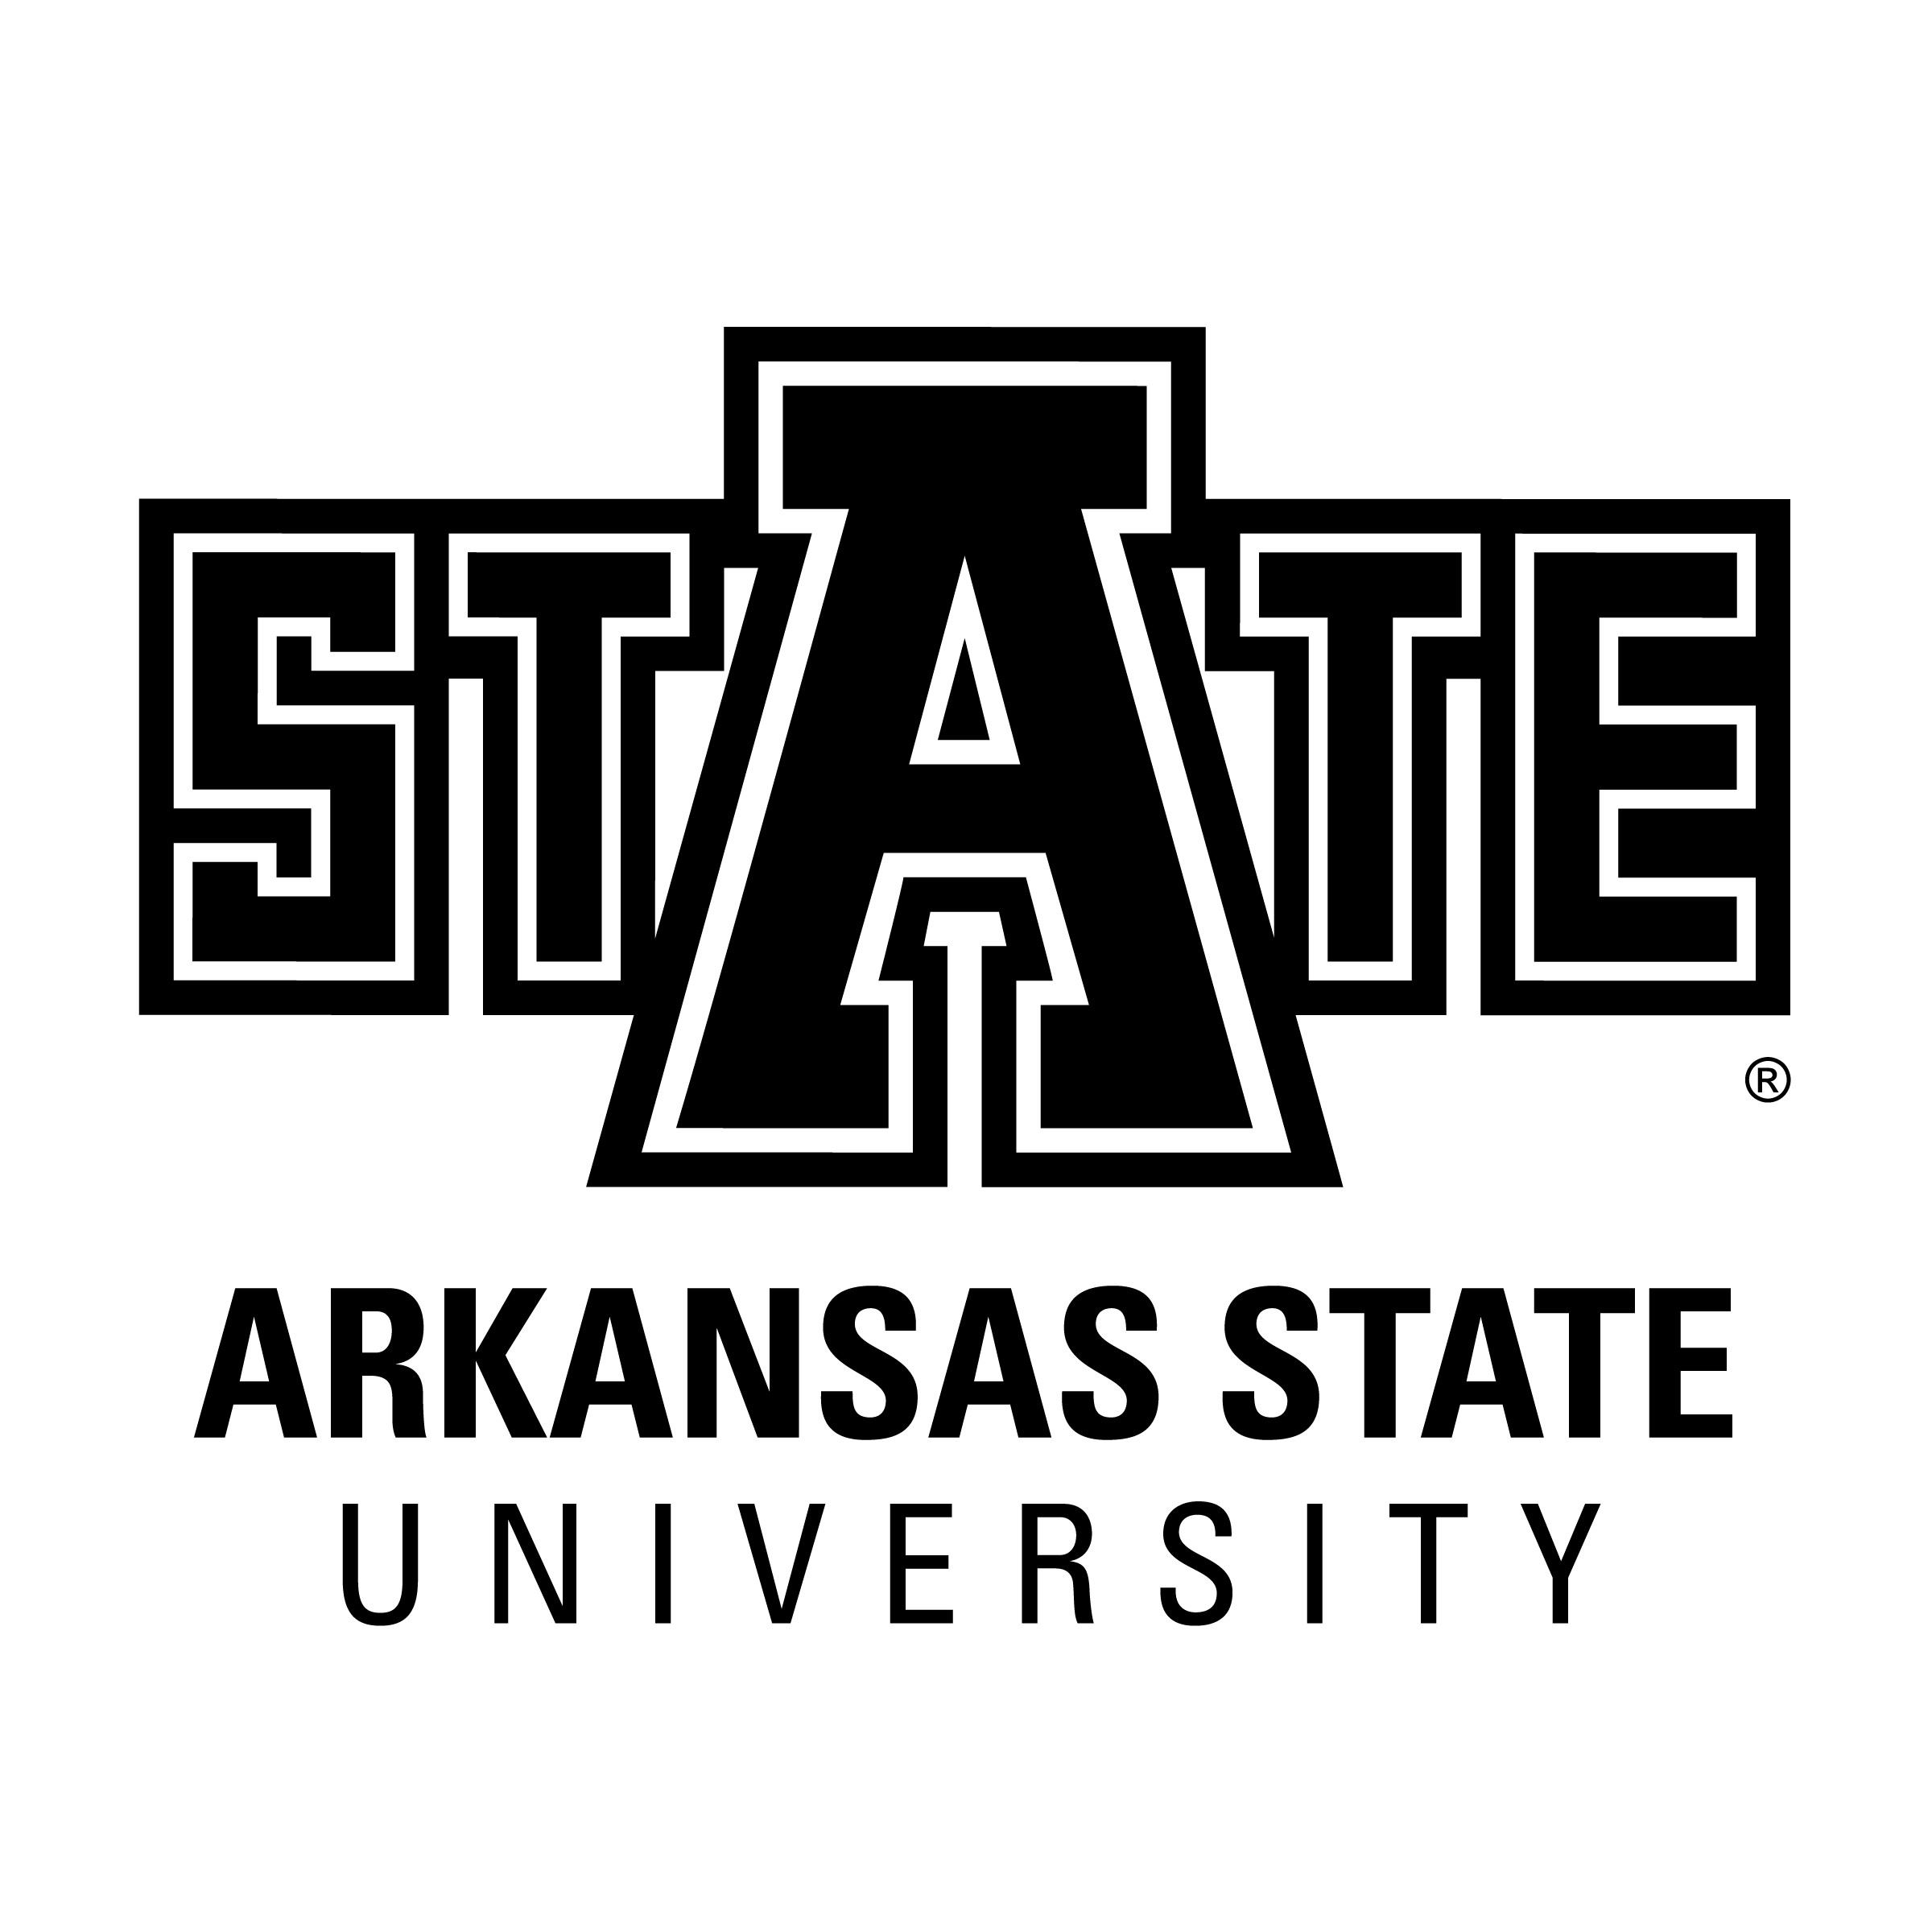 University Logo in Black